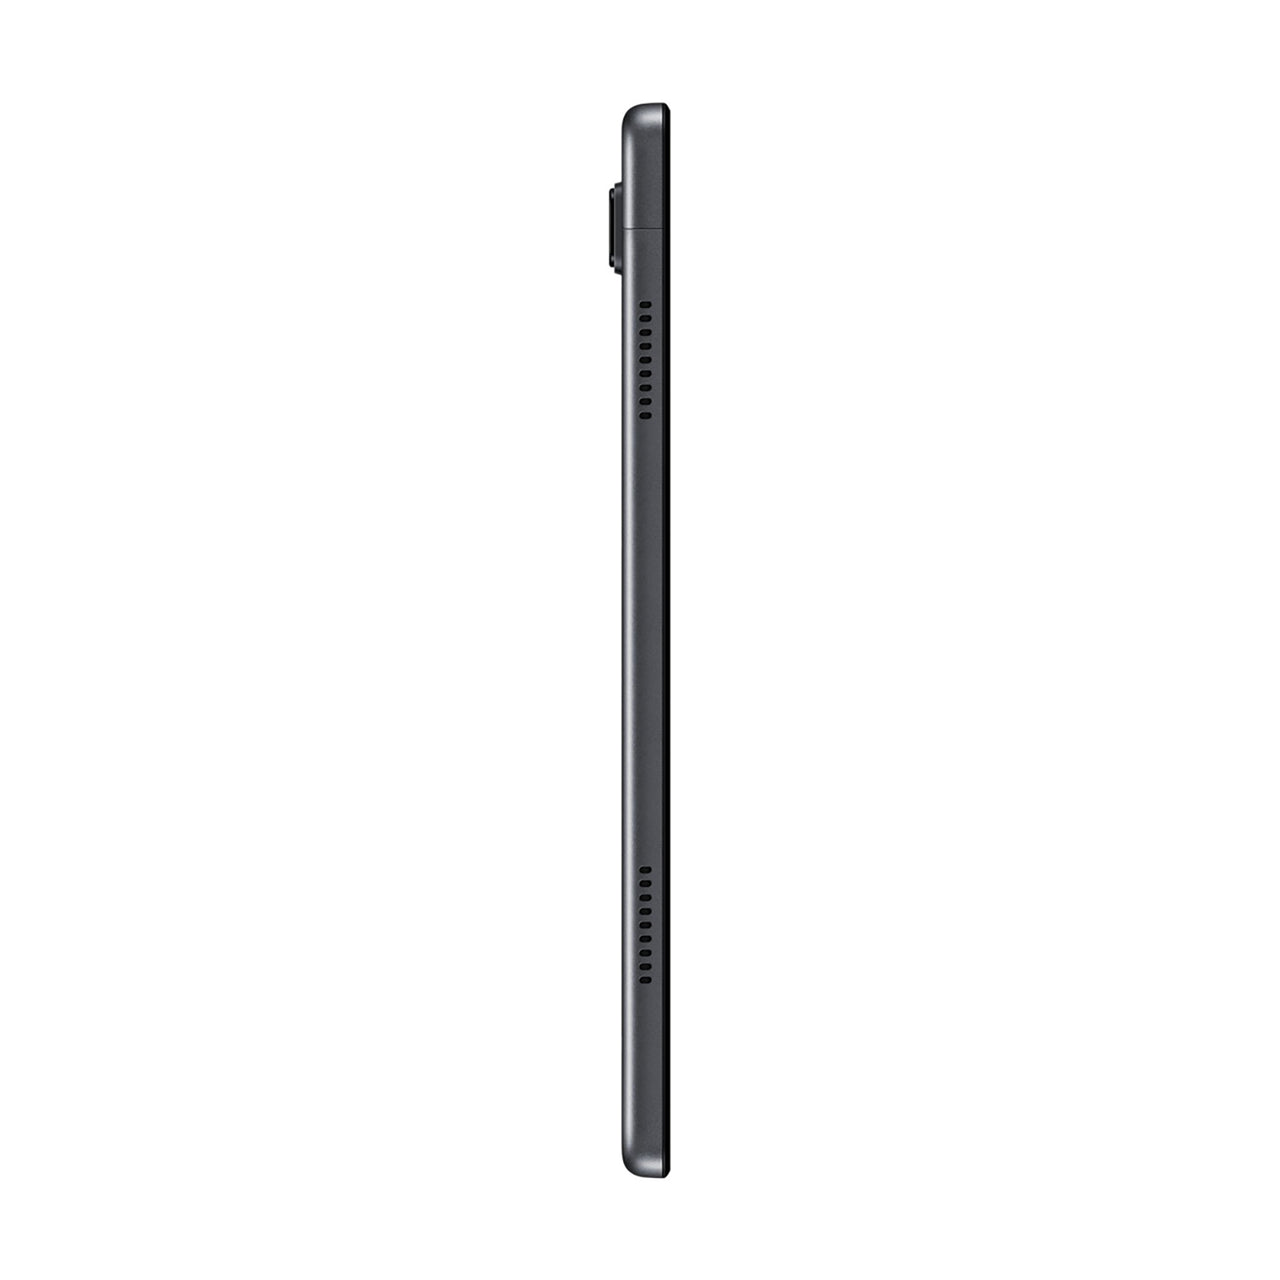 Samsung Galaxy Tab A7 10.4" 4G LTE 32GB - Grey